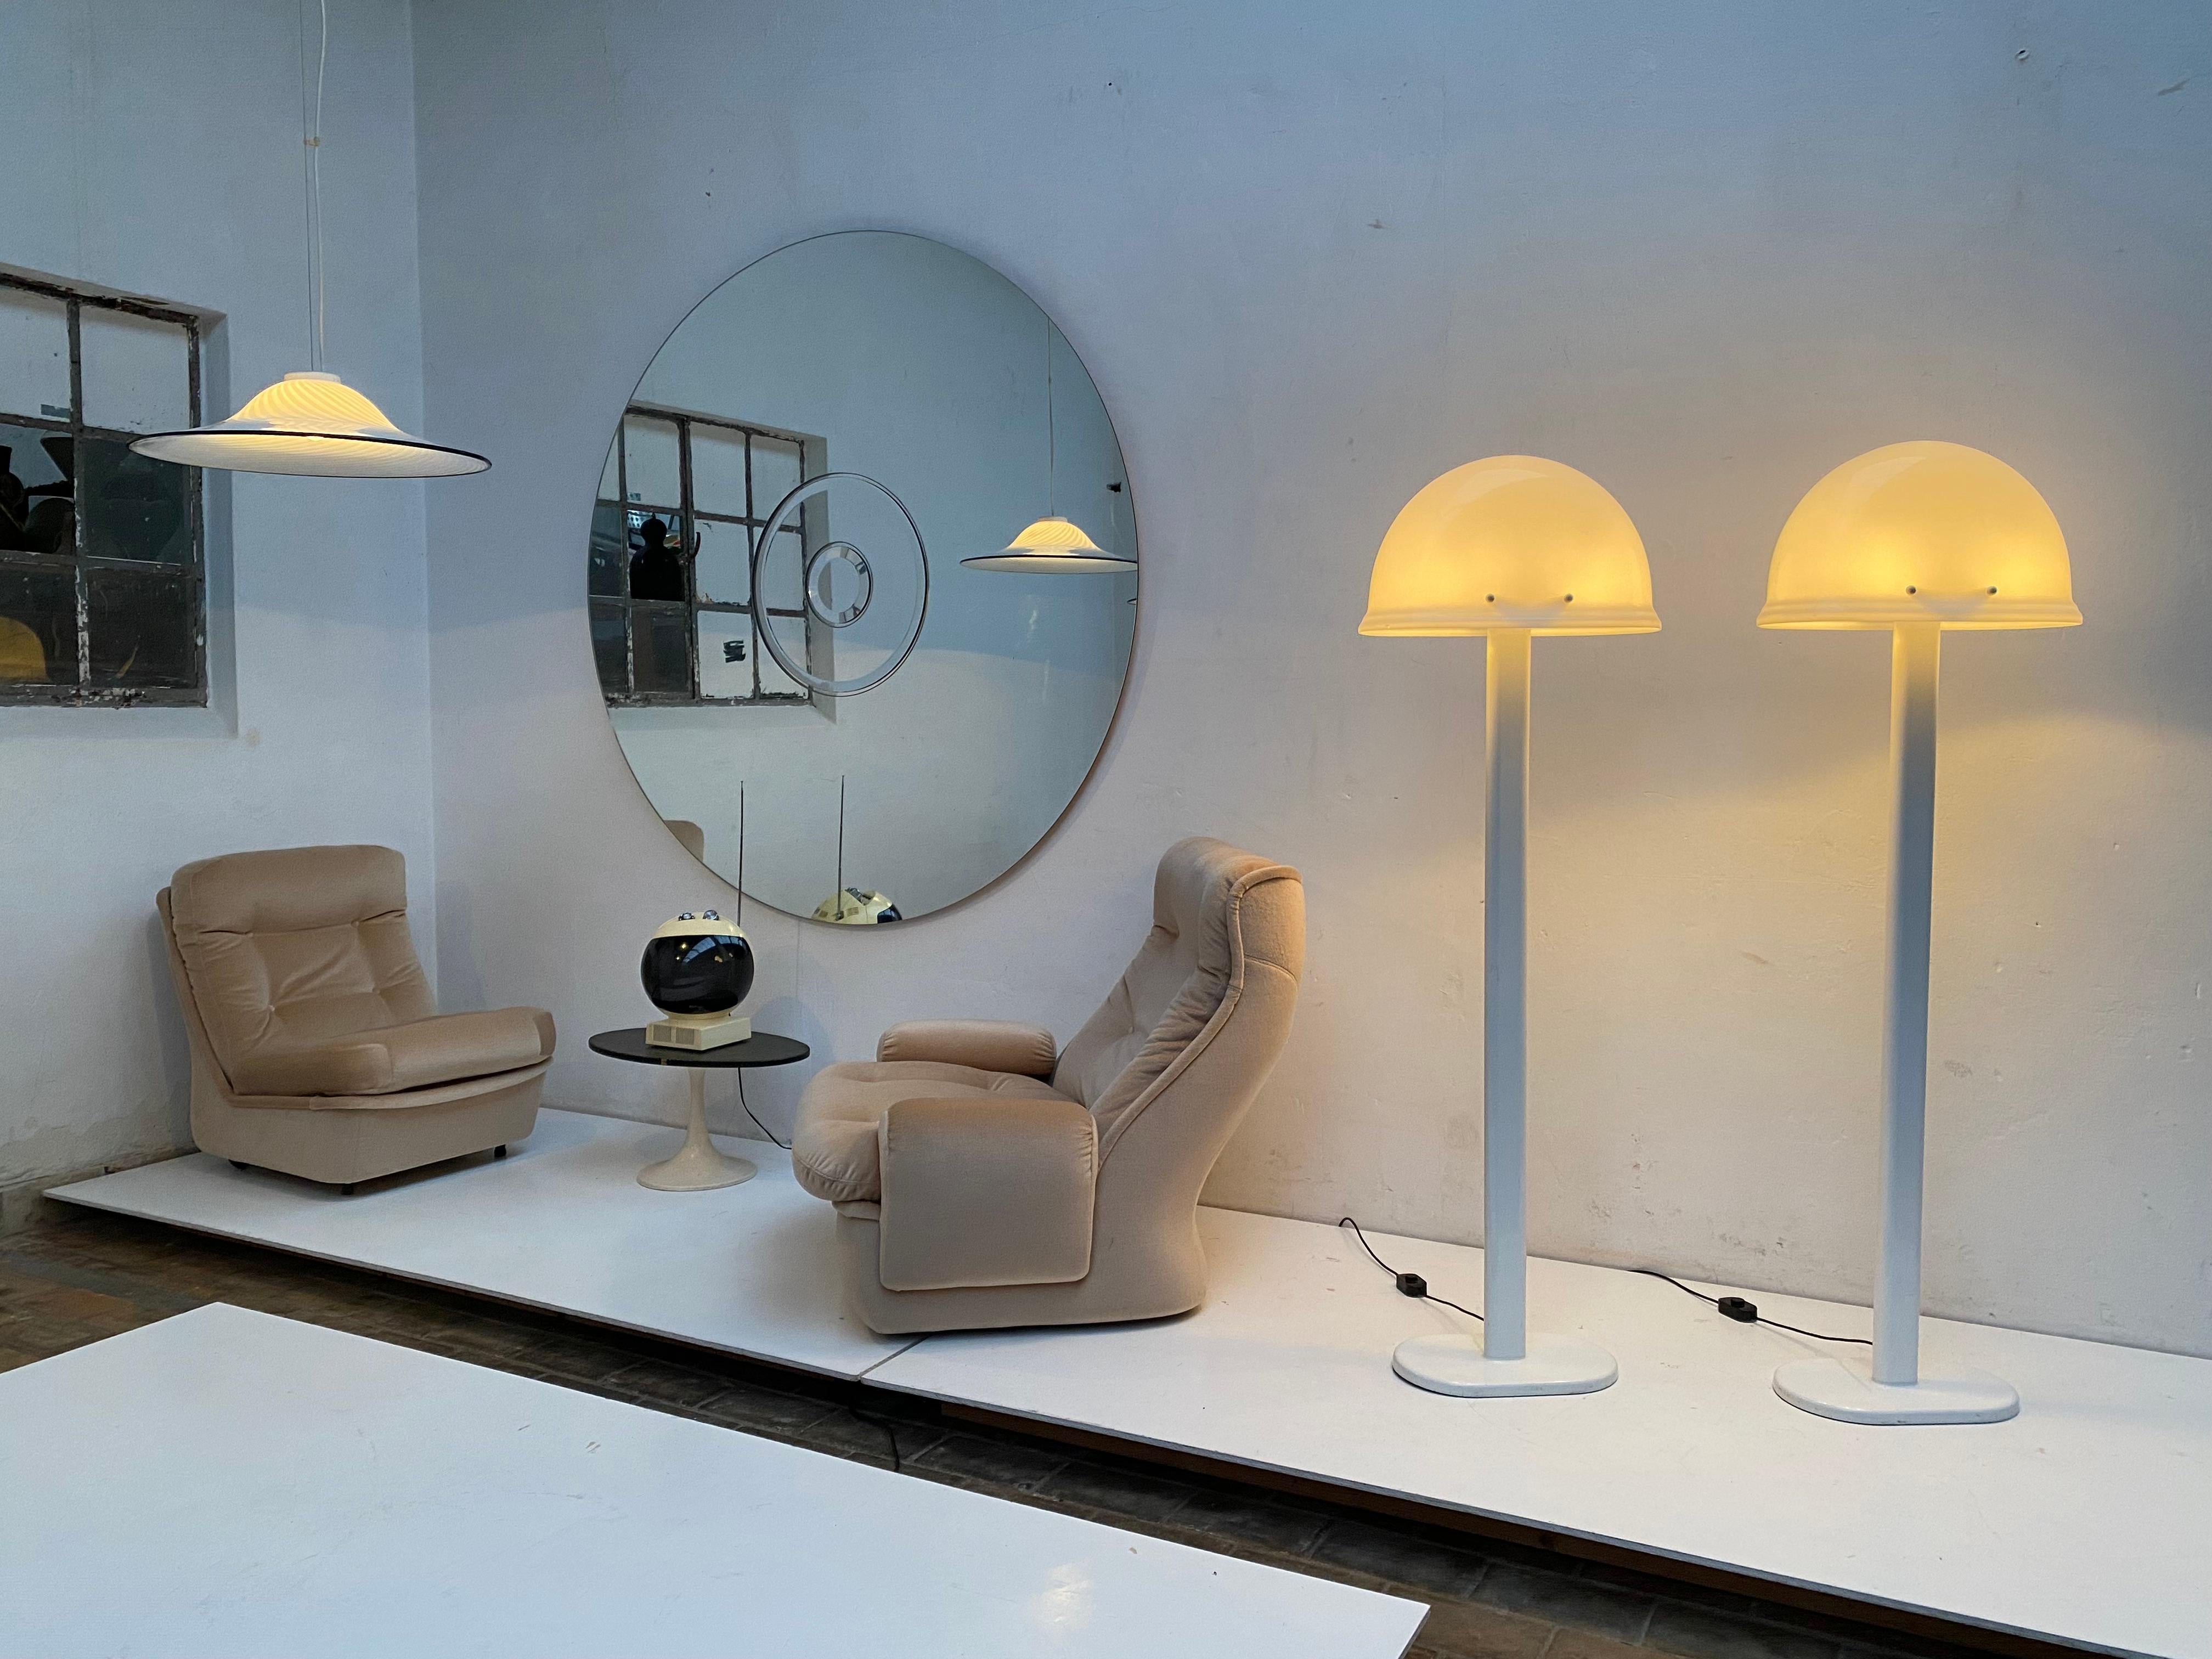 Ein Paar beeindruckende Stehlampen von Rodolfo Bonetto für iGuzzini  Italien 1970

Das Design steht in der Mitte der italienischen radikalen Design-Bewegung (1965-1975) und weist starke Space-Age-Einflüsse auf. 

Qualitativ hochwertige italienische